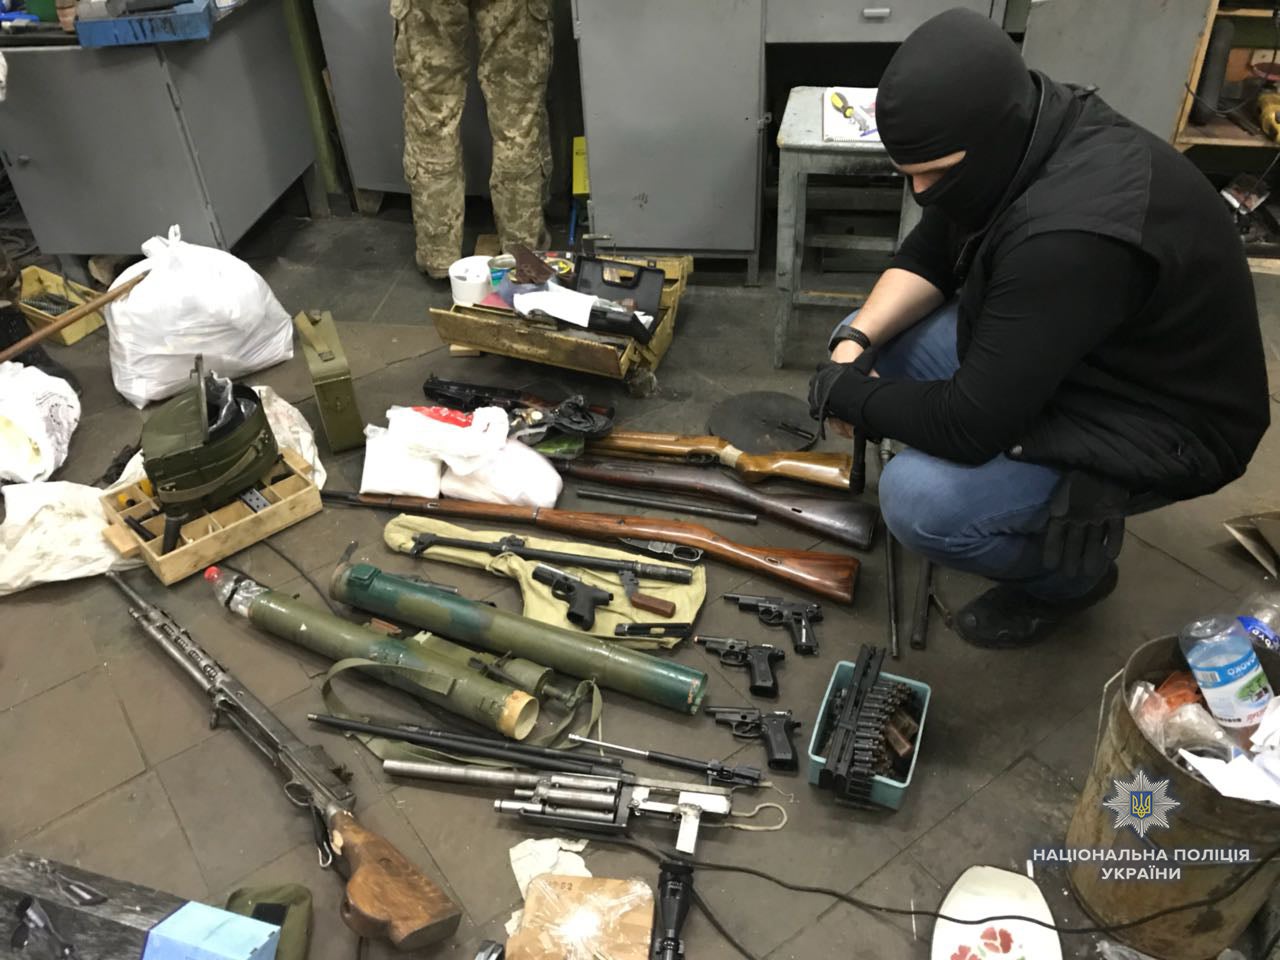 Illegal Firearms Seized in Kiev, Ukraine (12)